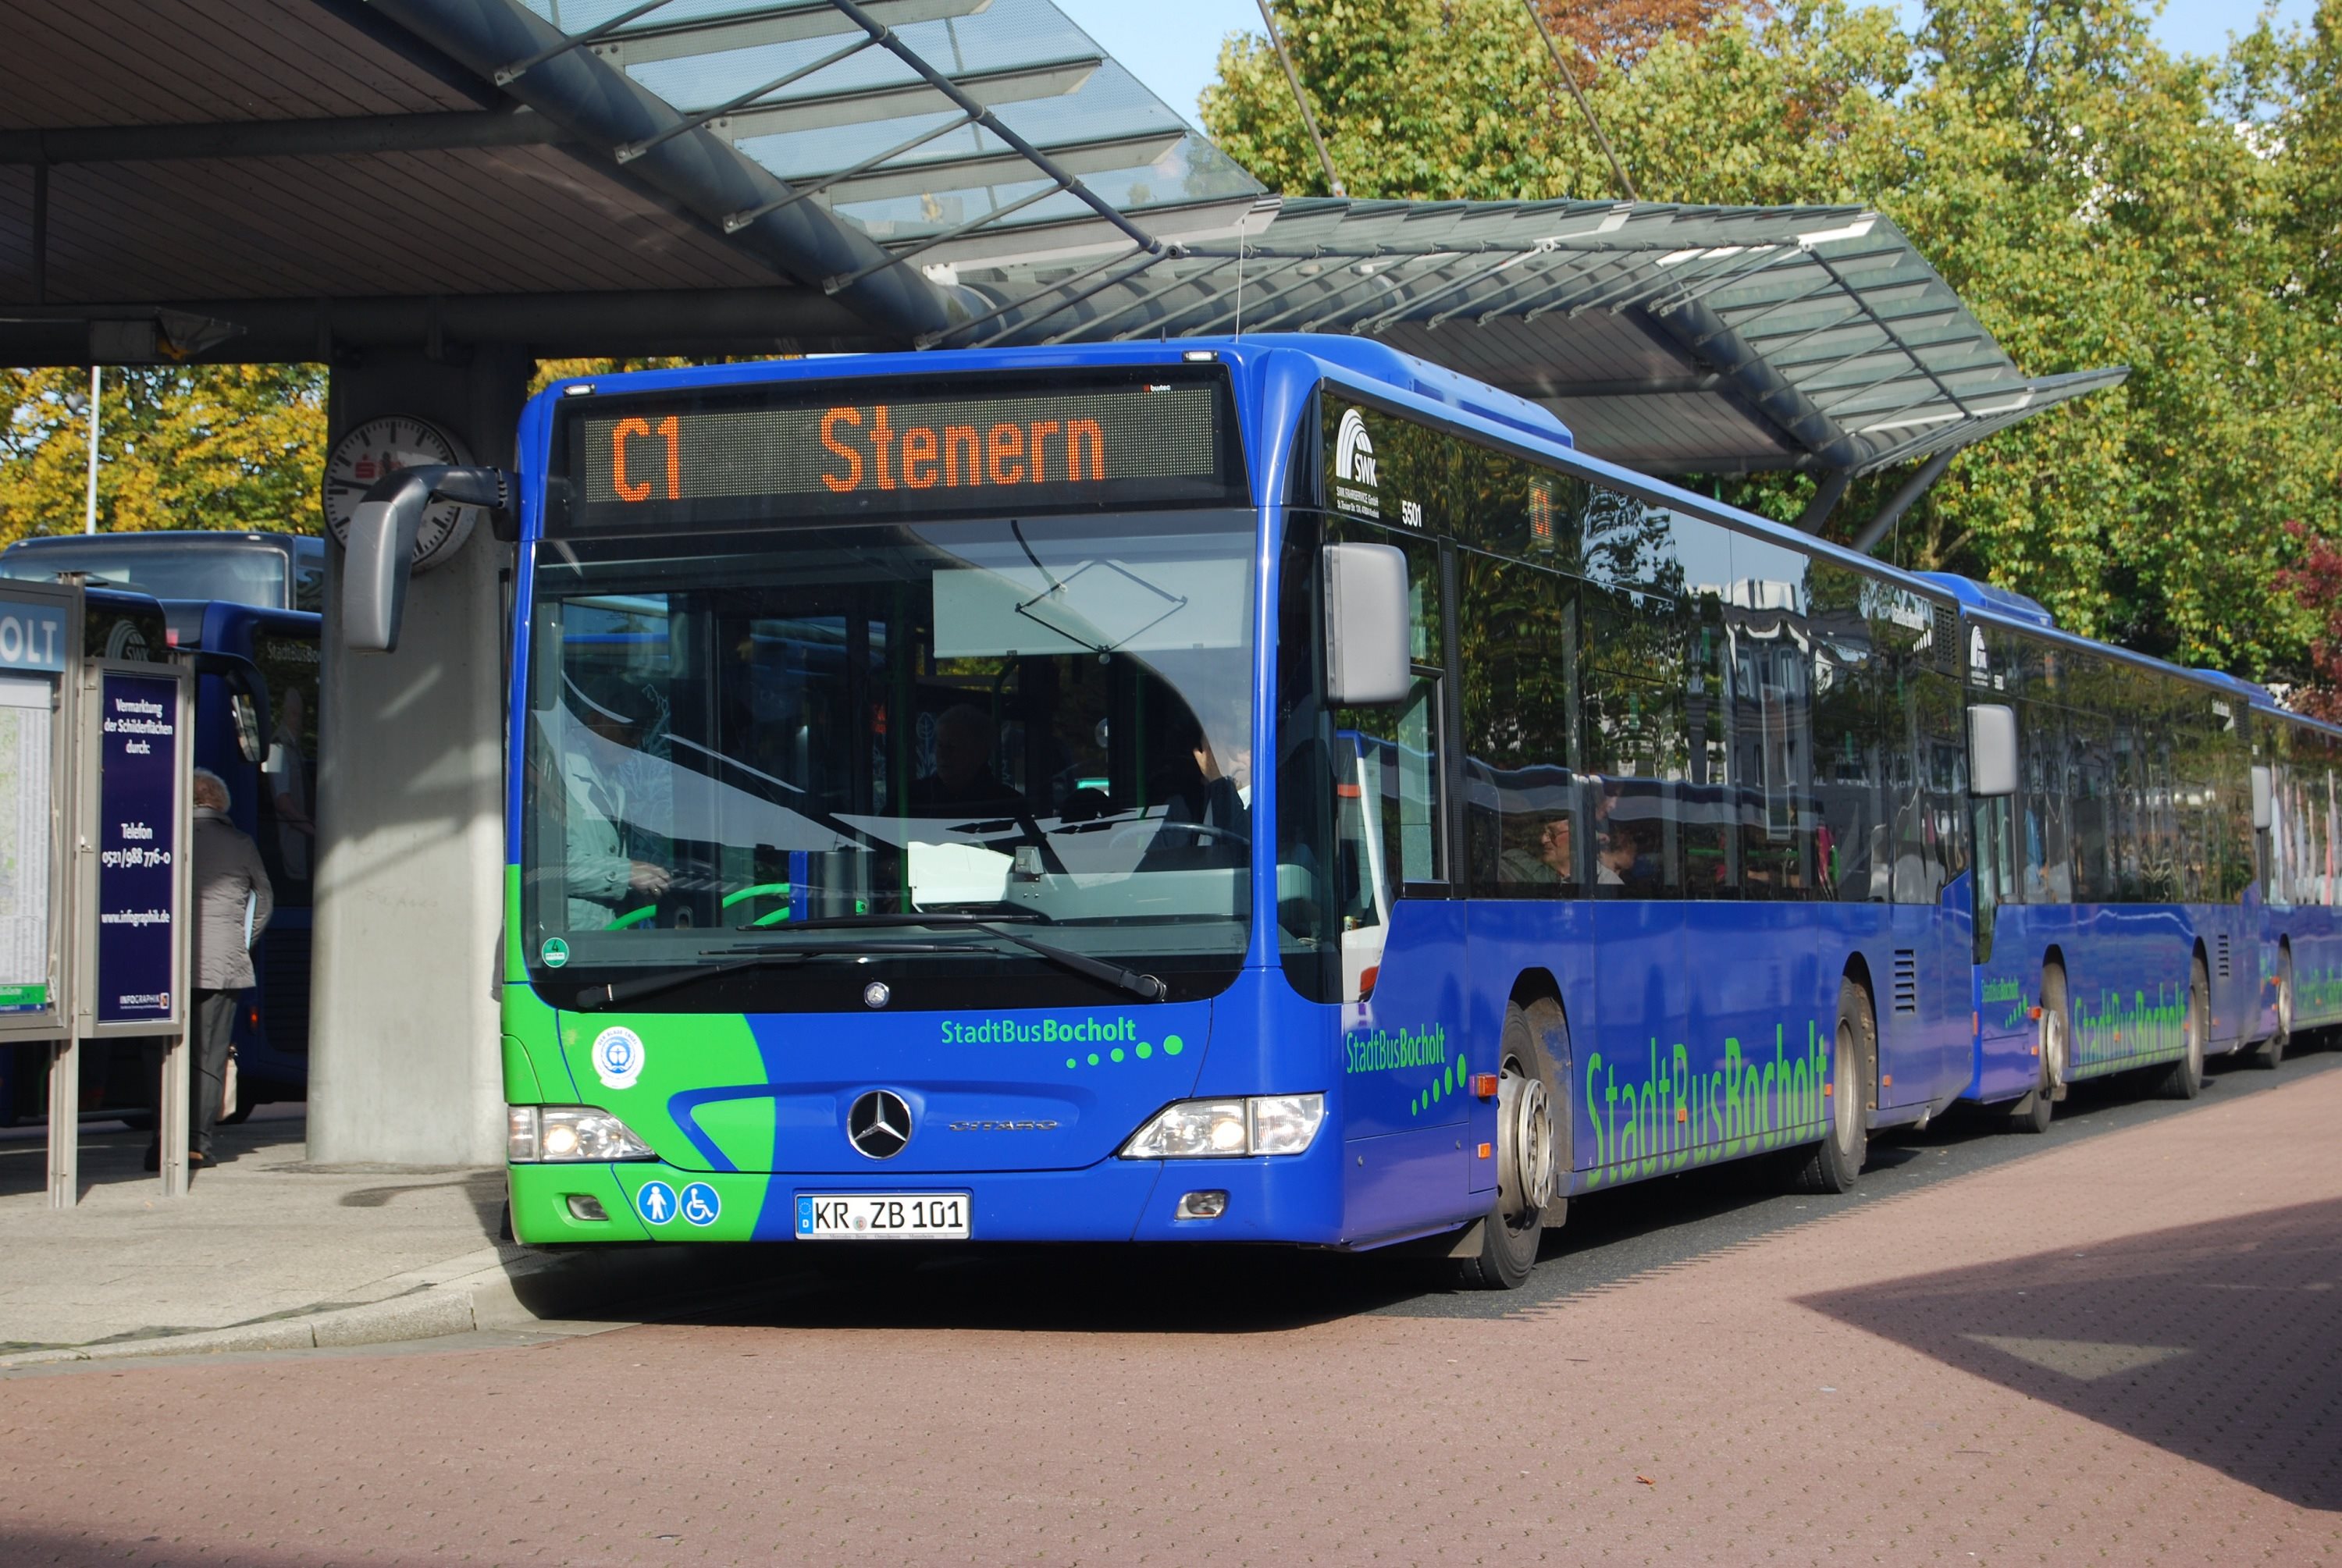 C1 Bocholt-Stenern Bocholt-Bustreff